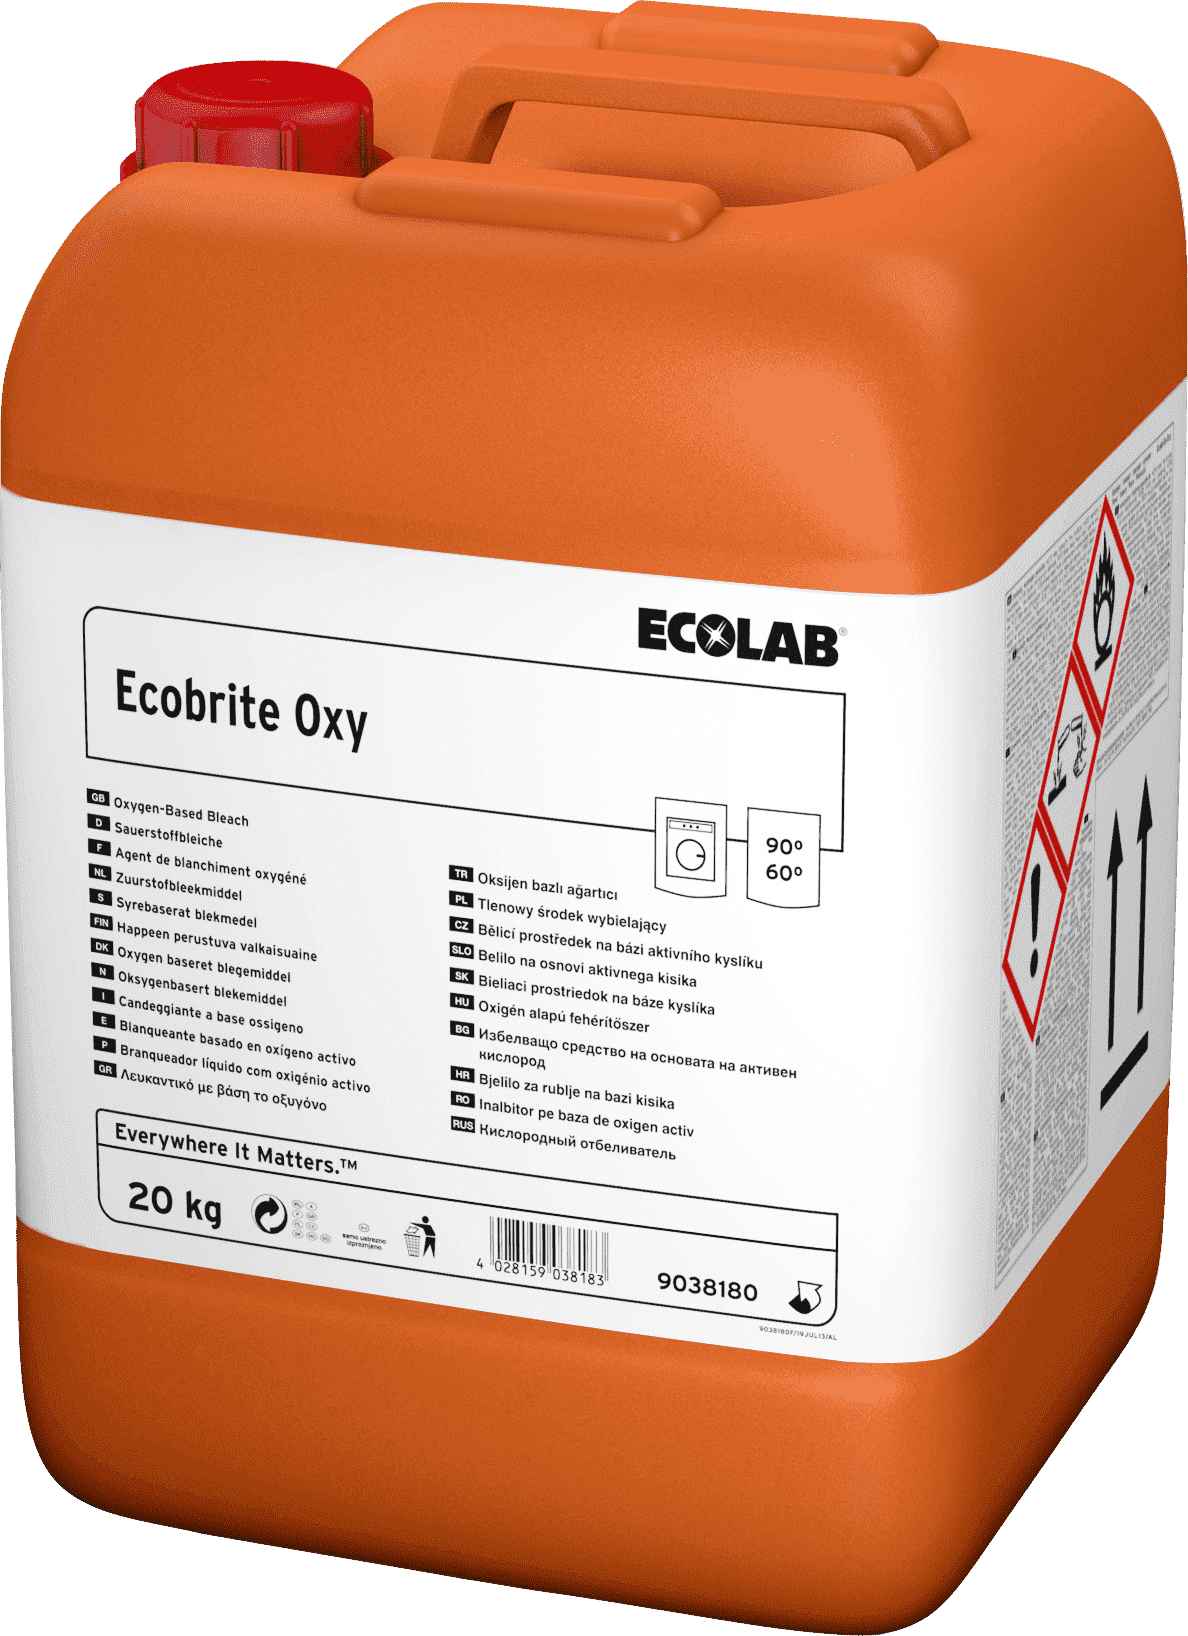 Ecolab Ecobrite Oxy кислородный отбеливатель